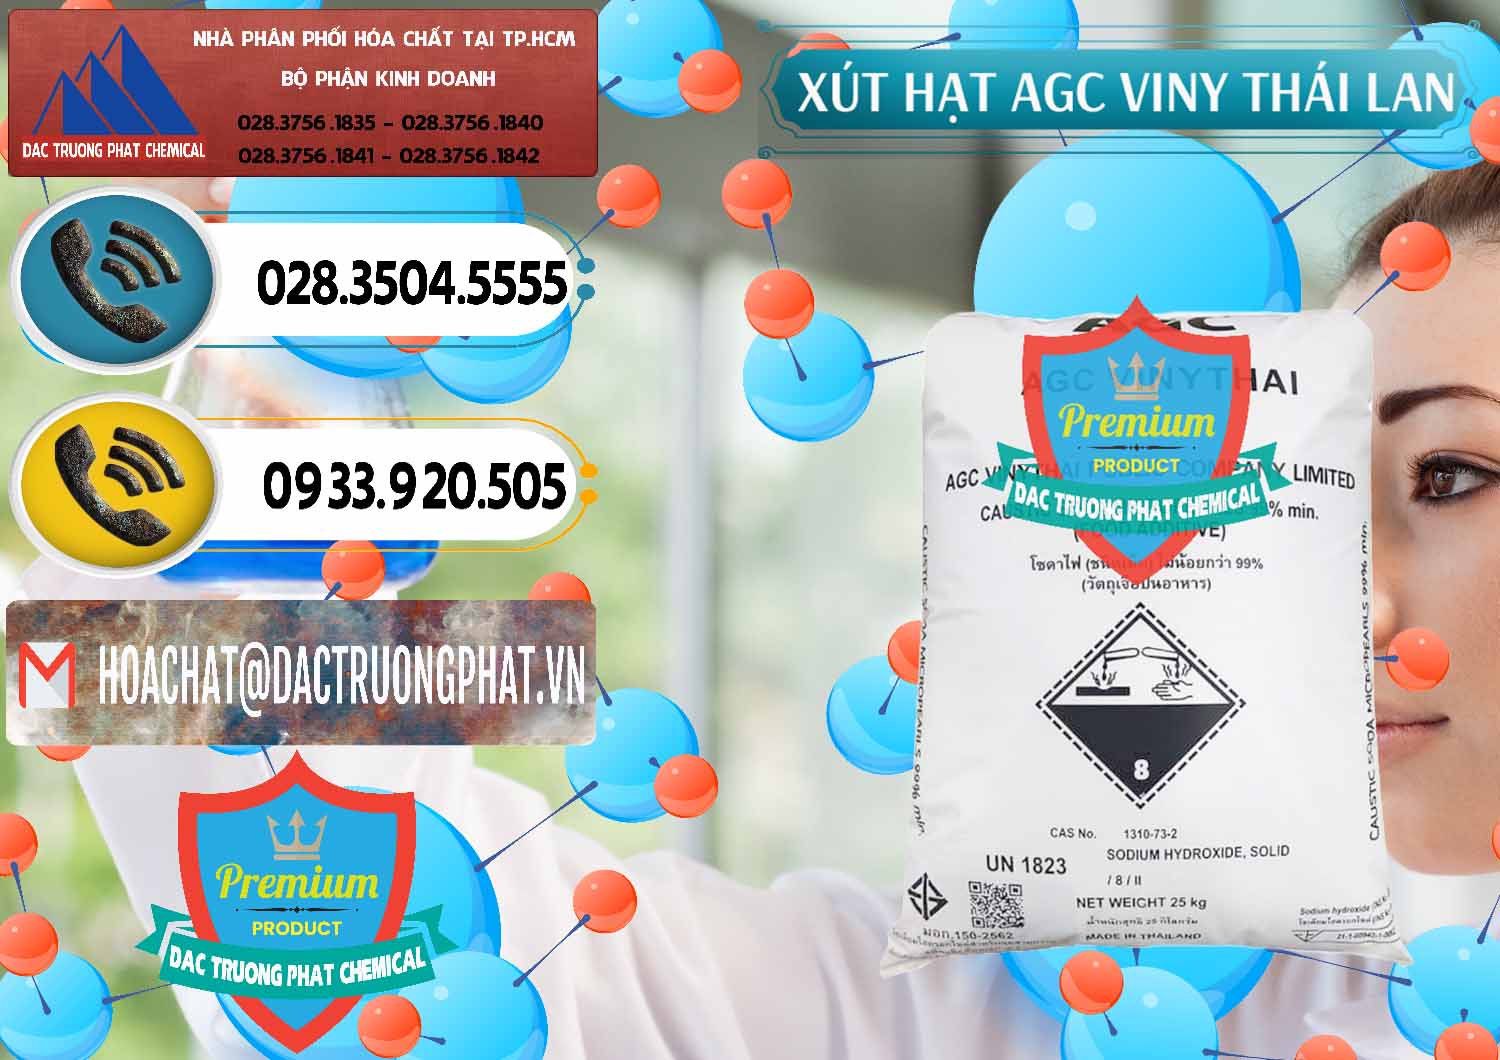 Đơn vị chuyên phân phối và bán Xút Hạt - NaOH Bột 99% AGC Viny Thái Lan - 0399 - Cung cấp - bán hóa chất tại TP.HCM - hoachatdetnhuom.vn